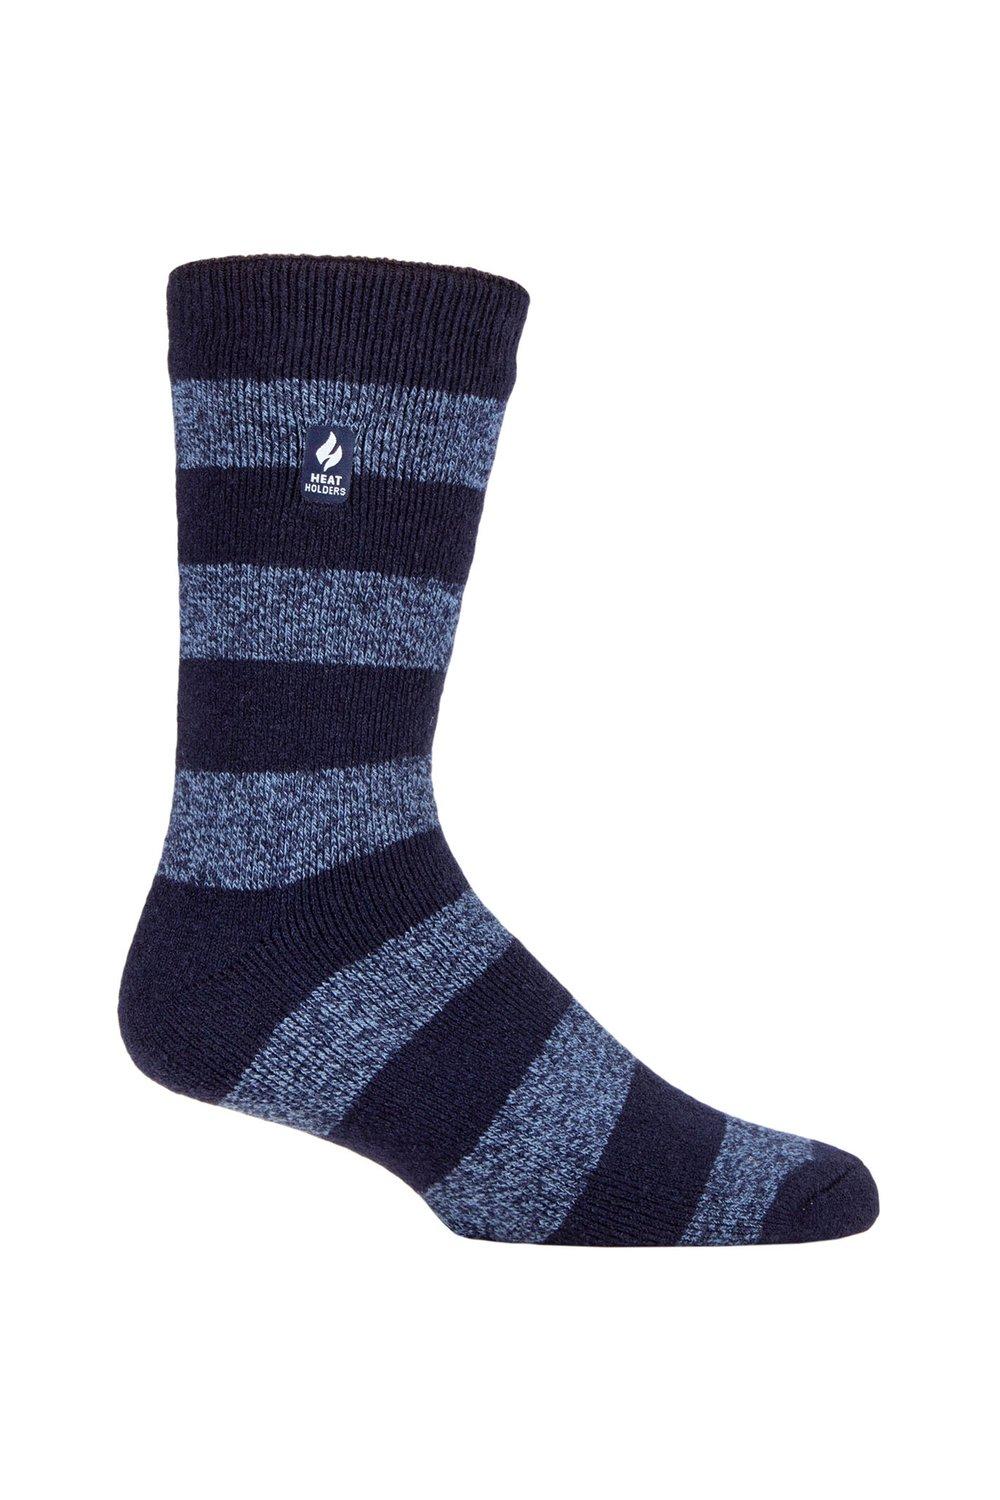 1 пара носков в полоску, с рисунком и узором 1.6 TOG Lite SOCKSHOP Heat Holders, синий